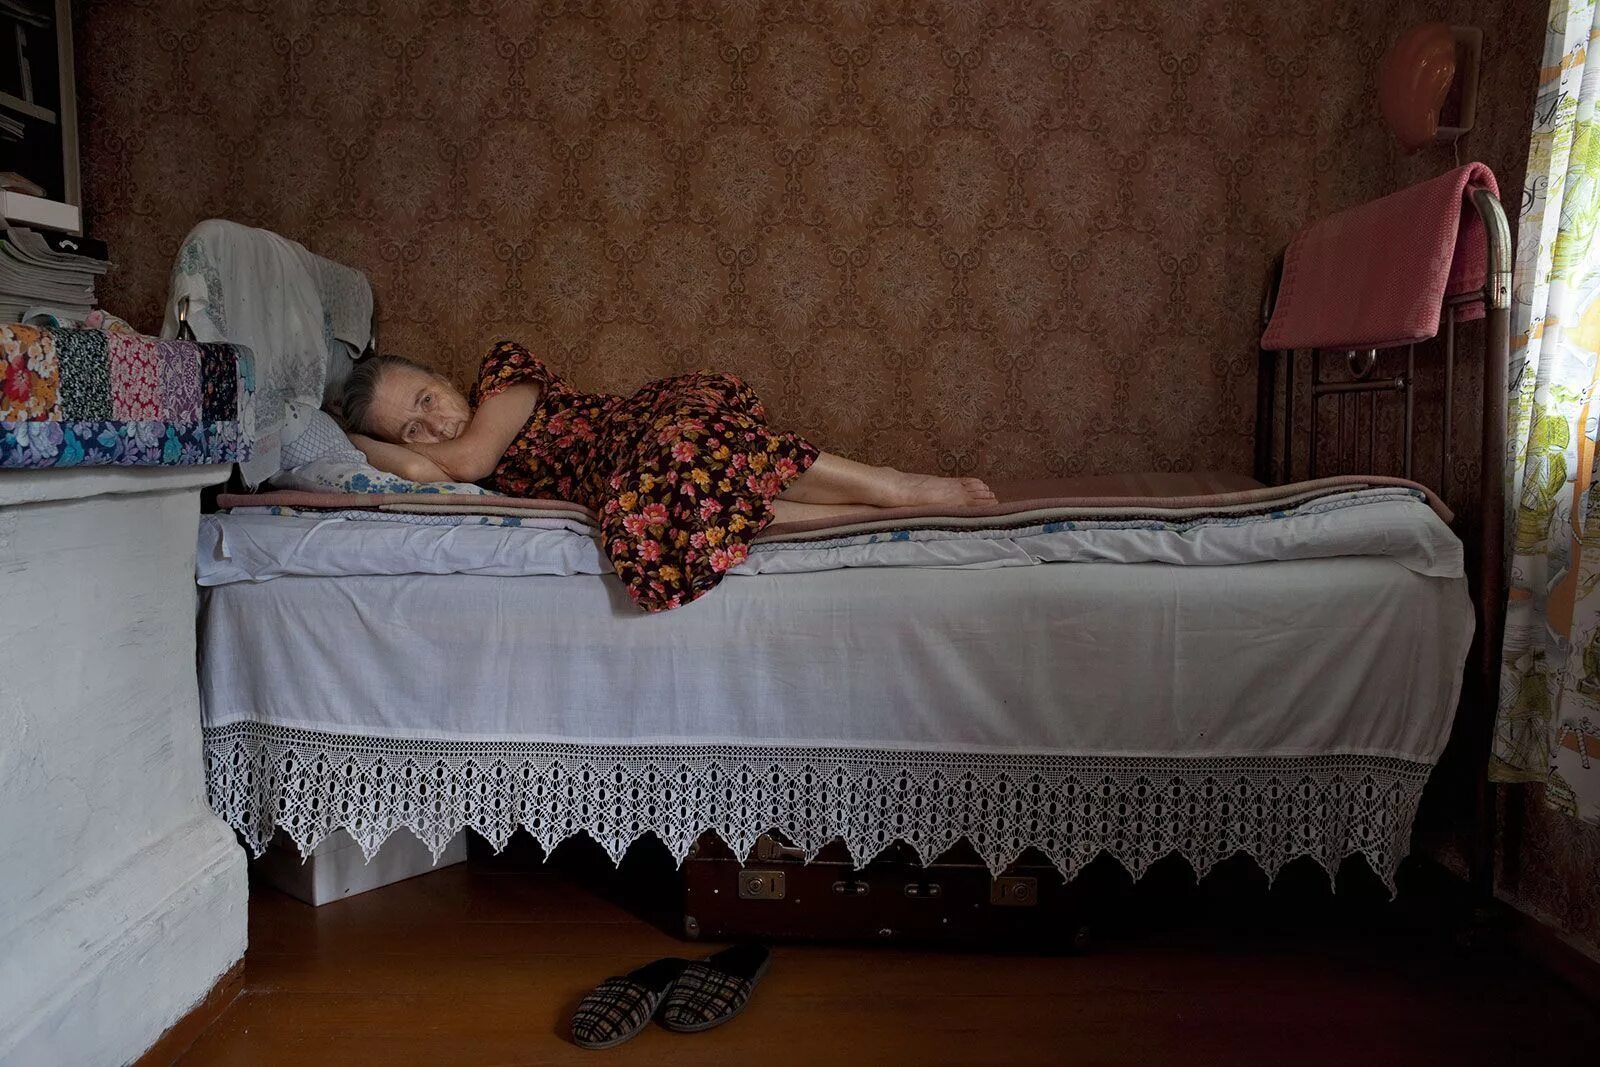 Она воспитанная девочка прямо с глубинки. Жизнь в Российской глубинке. Фотосессия в деревенском доме на кровати.